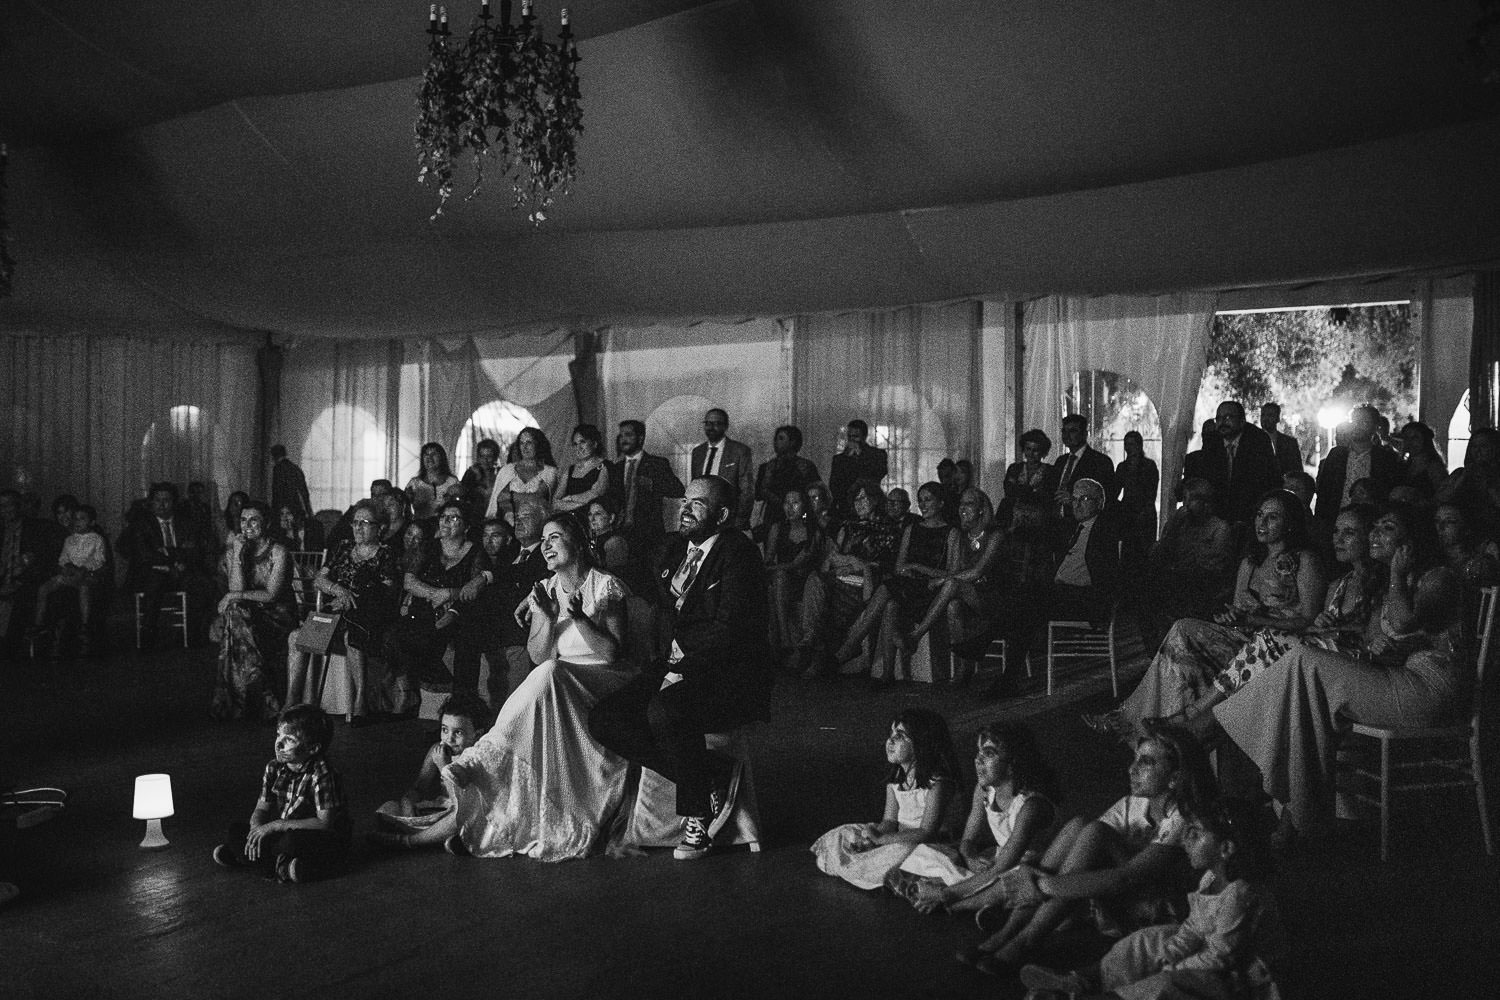 Fotografia de boda en Caceres boda civil Cantarrana42